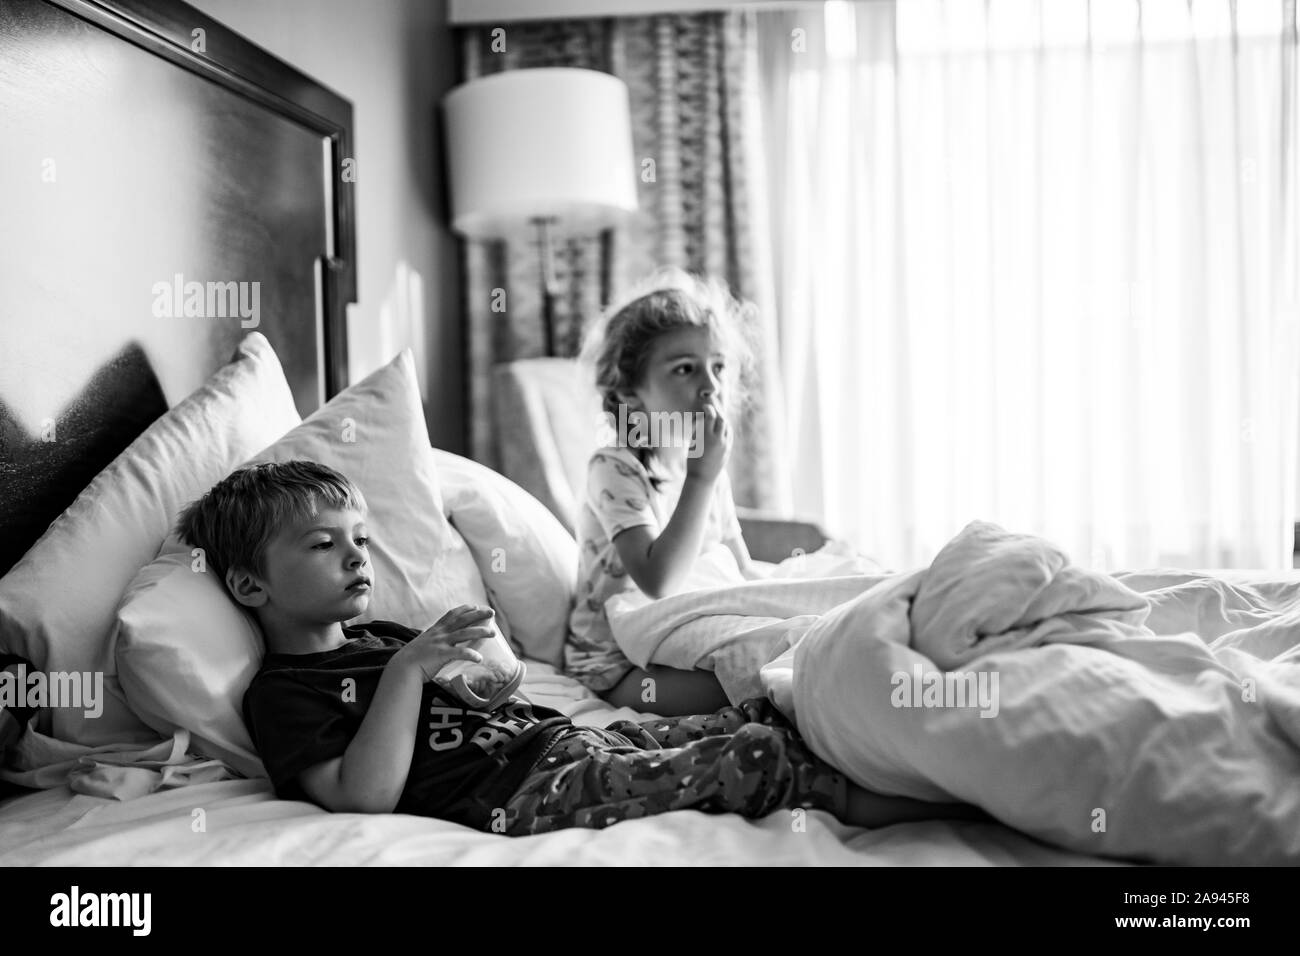 Zwei Kinder liegen in einem Hotel Zimmer Bett Snacks essen. Stockfoto